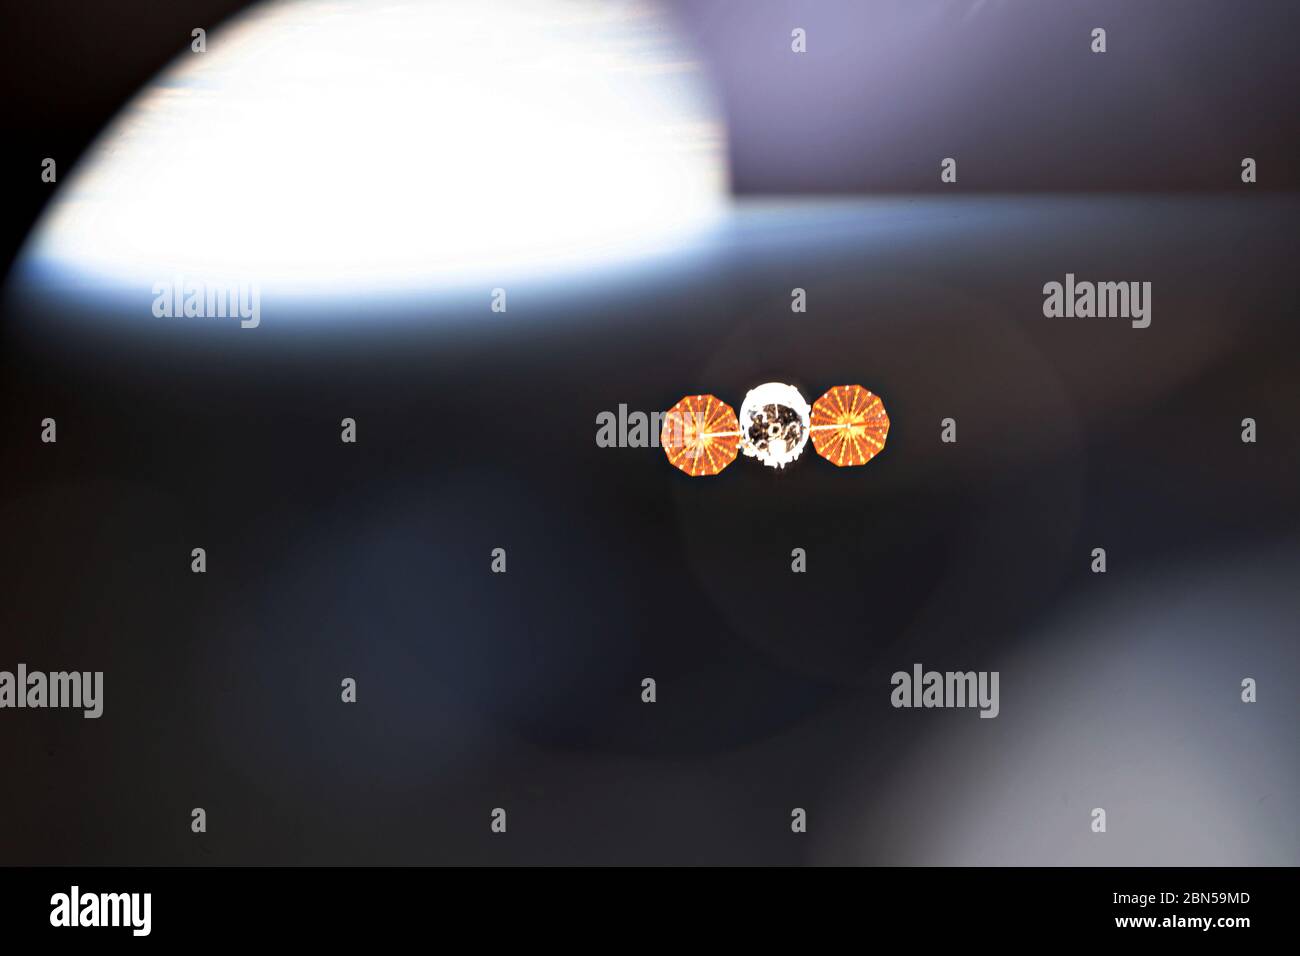 Internationale Raumstation, Earth Orbit. Mai 2020. Internationale Raumstation, ERDUMLAUFBAHN. 11 Mai 2020. Die Northrop Grumman Cygnus Raumsonde mit den ausgeprägten Becken geformten UltraFlex Solararrays schwebt weg, nachdem die CanadaArm2 ihren 83-tägigen Aufenthalt auf der Internationalen Raumstation am 11. Mai 2020 in Earth Orbit beendet hat. Quelle: NASA/NASA/Alamy Live News Stockfoto